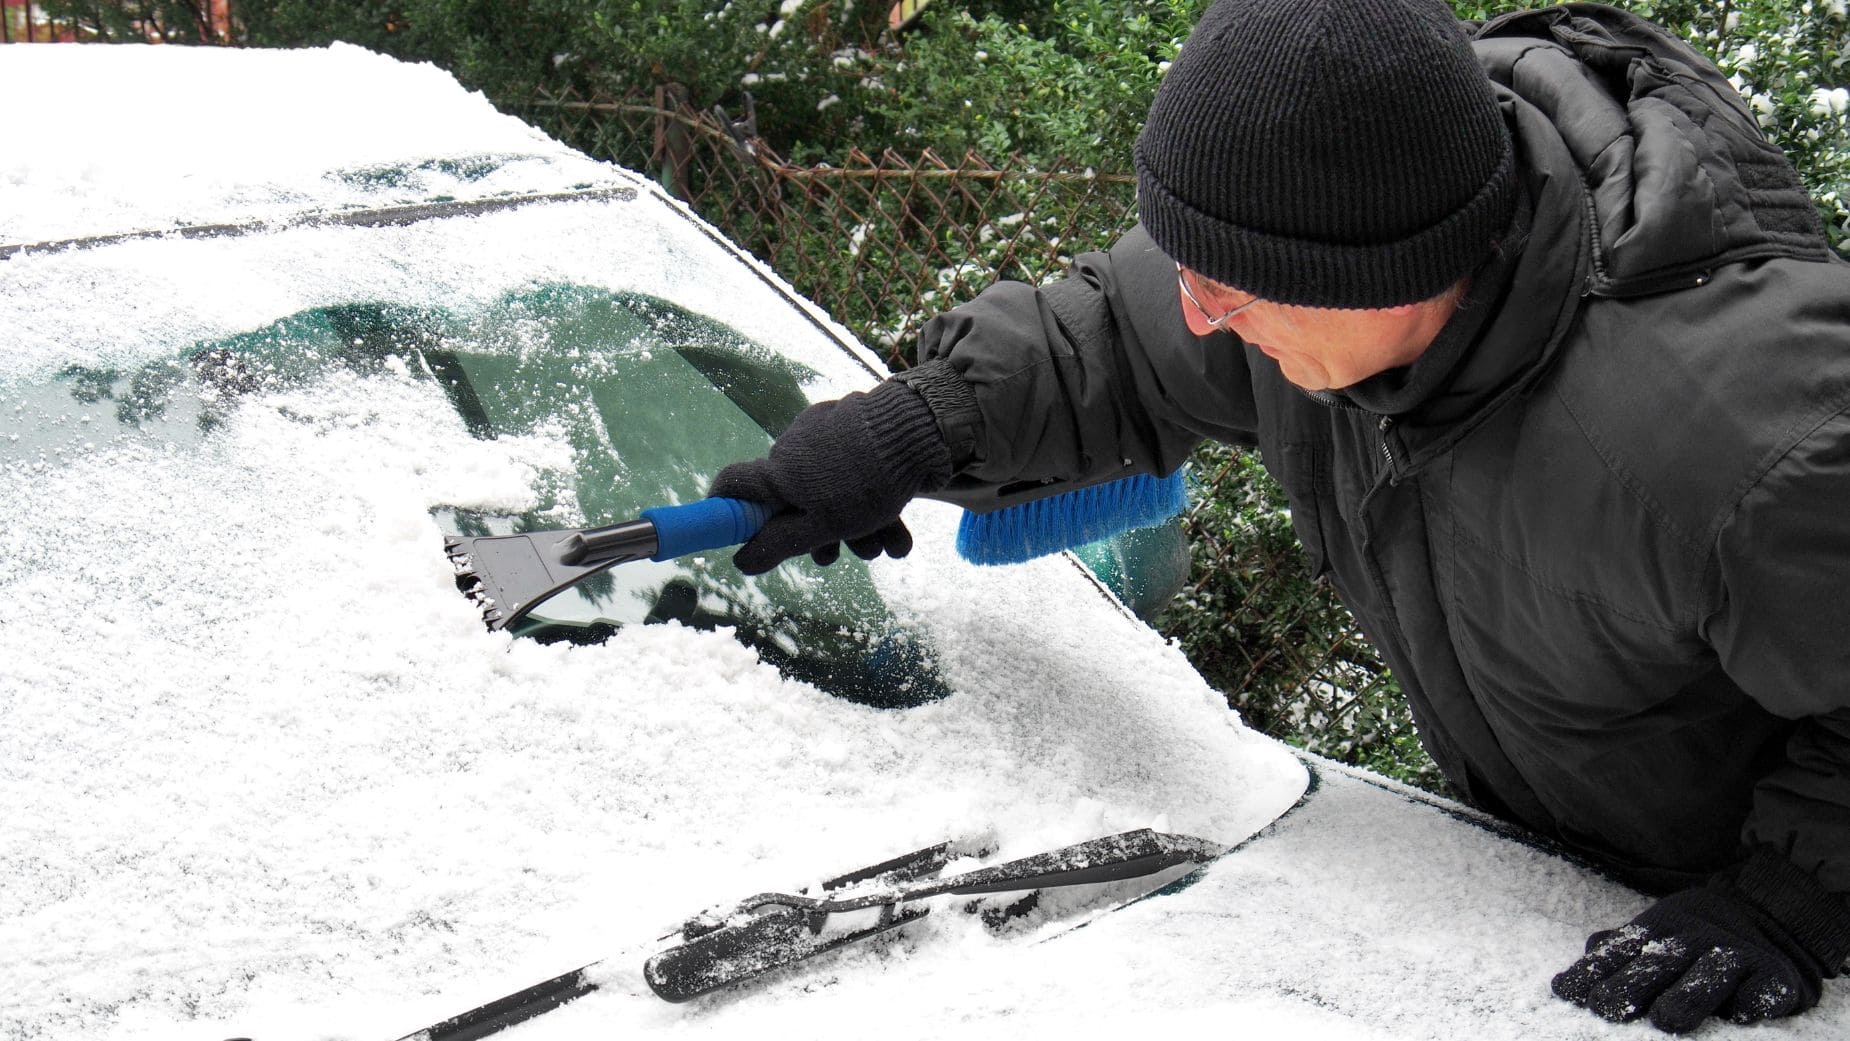 Cómo eliminar el hielo del coche según la Guardia Civil